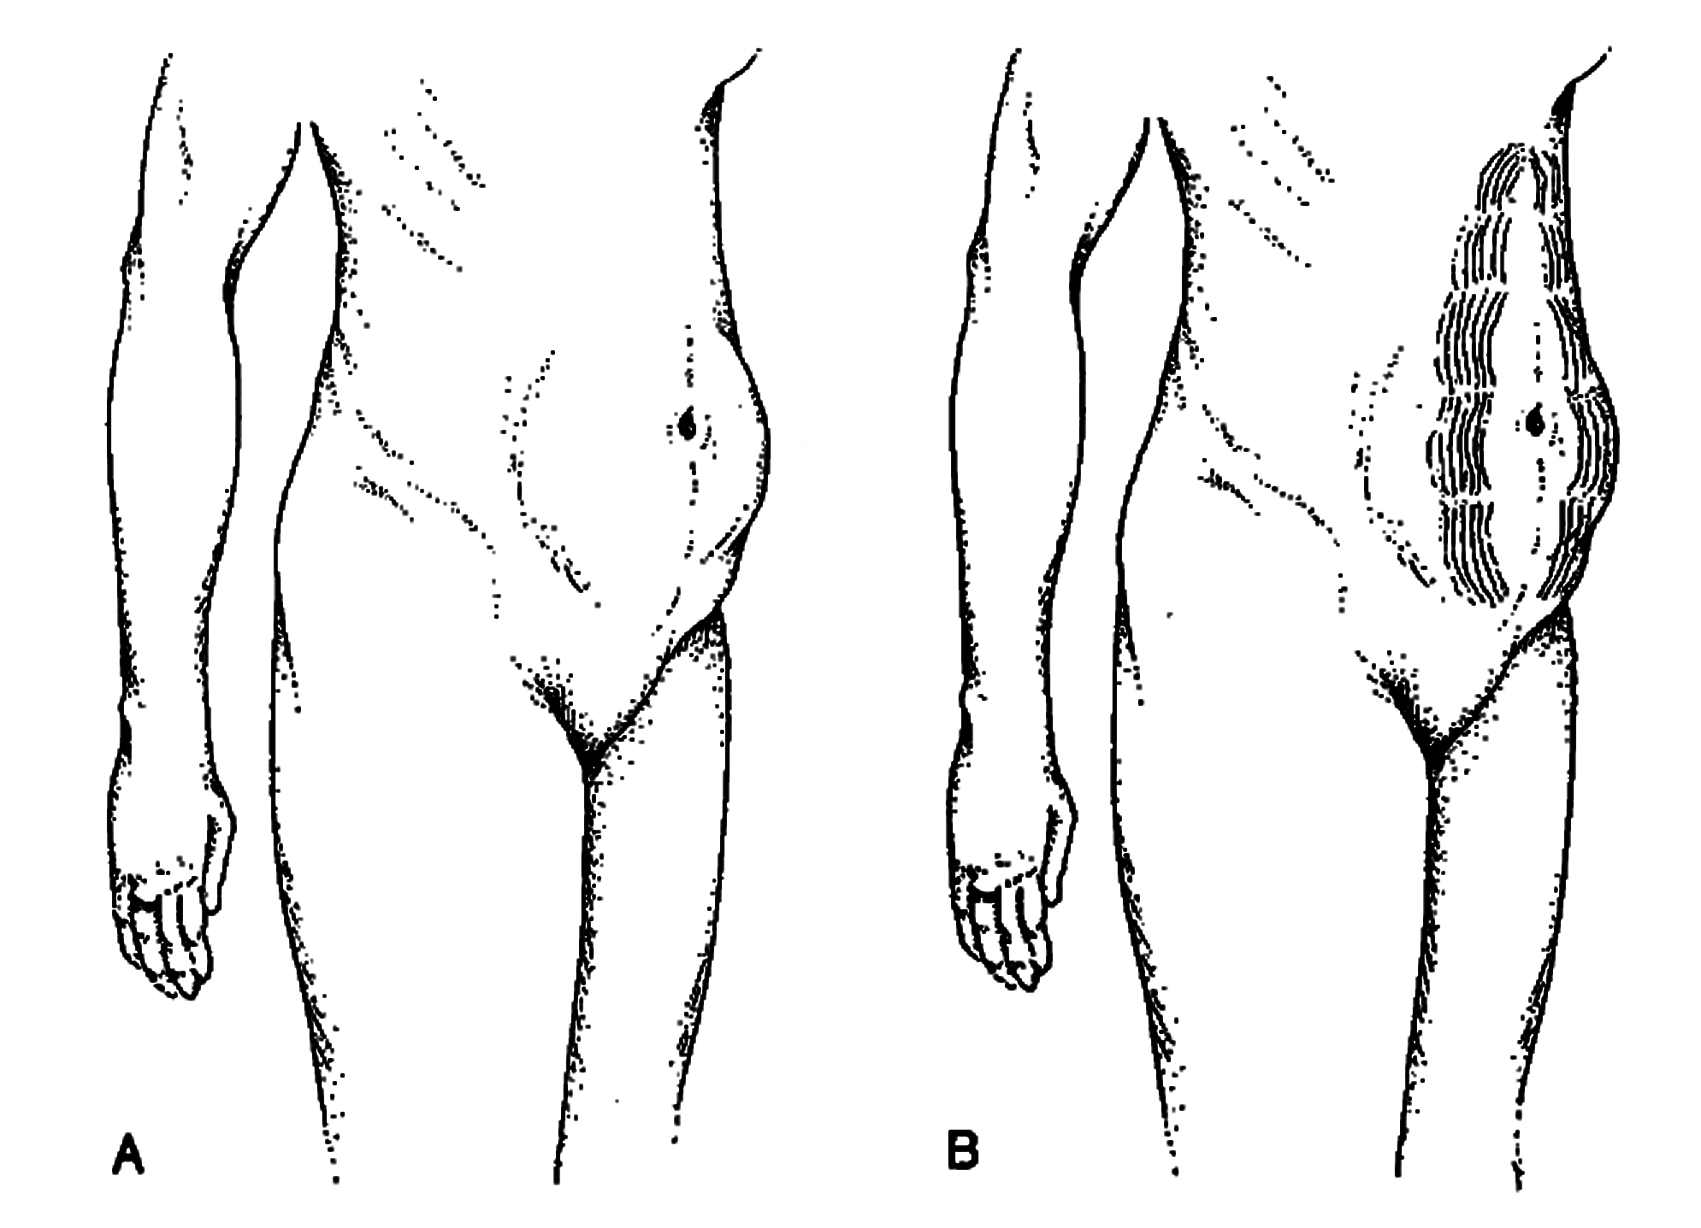 Hình minh họa đối tượng của phẫu thuật tạo hình thành bụng hỗ trợ nội soi. Nguồn: Al Aly et al (2000), Endoscopic plastic surgery, Surgical Clinics Of North America